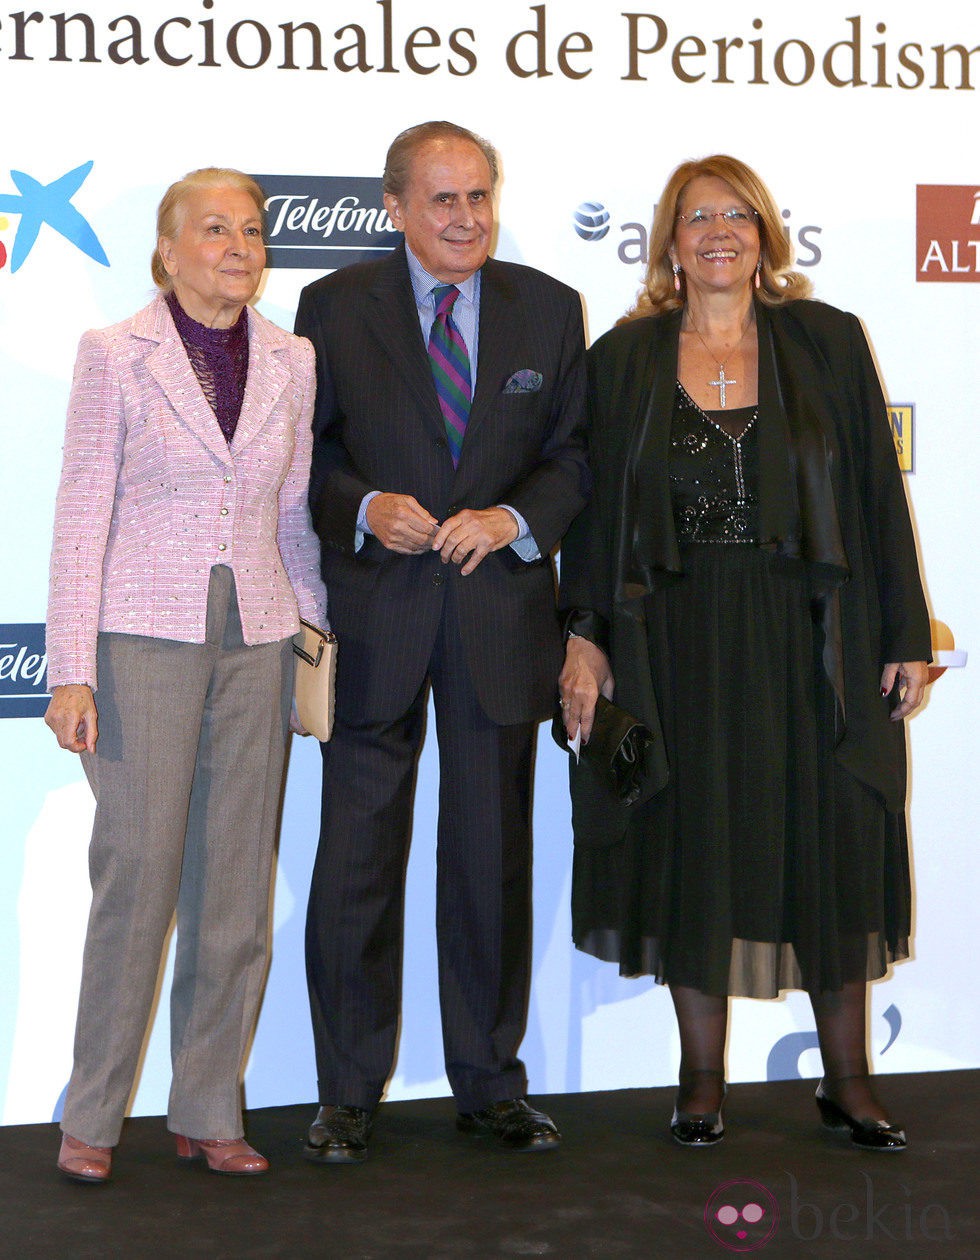 Jaime Peñafiel en la entrega de los Premios Internacionales de Periodismo 2013